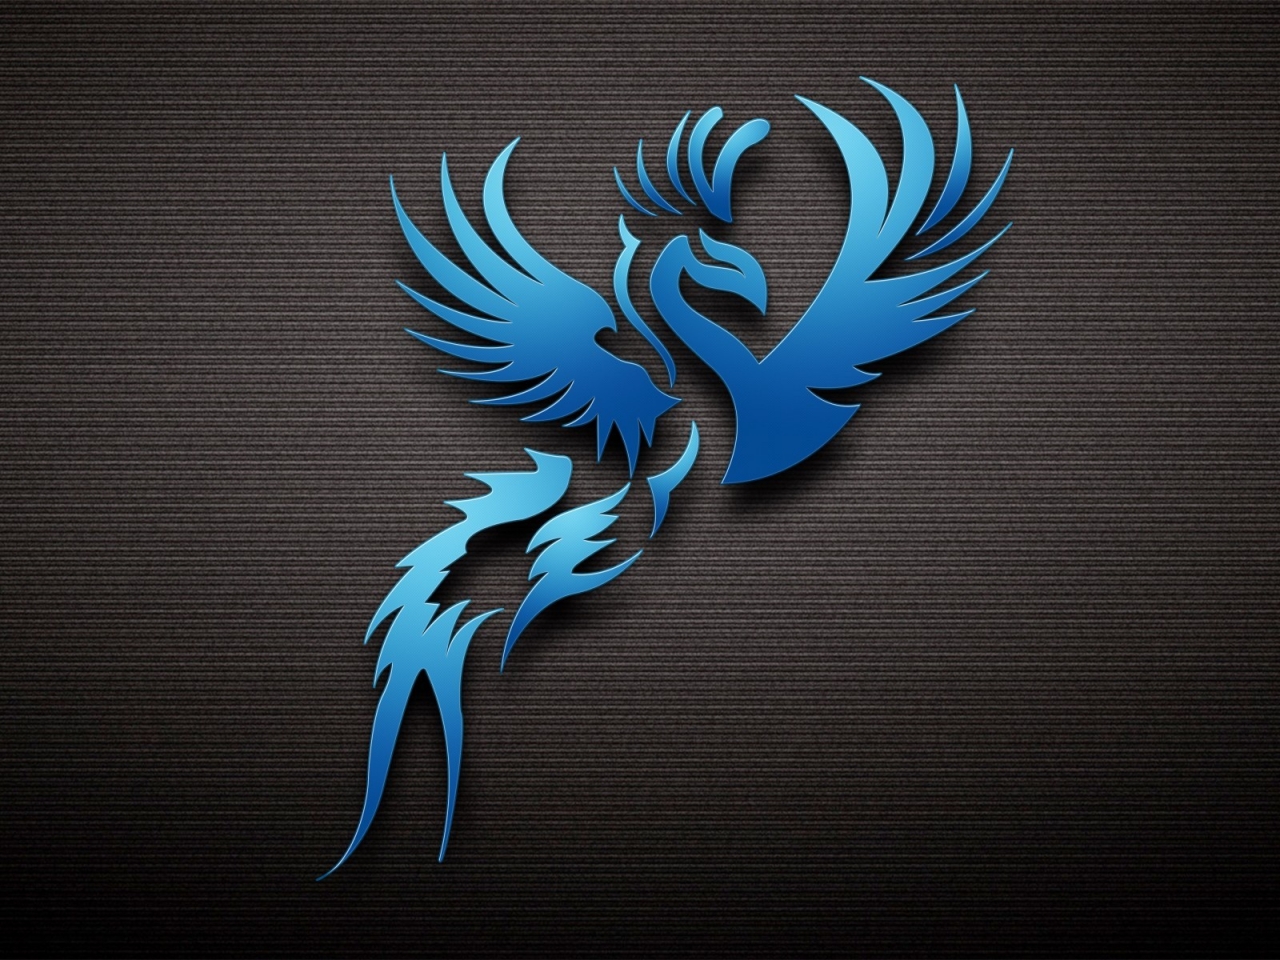 Dark Blue Bird for 1280 x 960 resolution